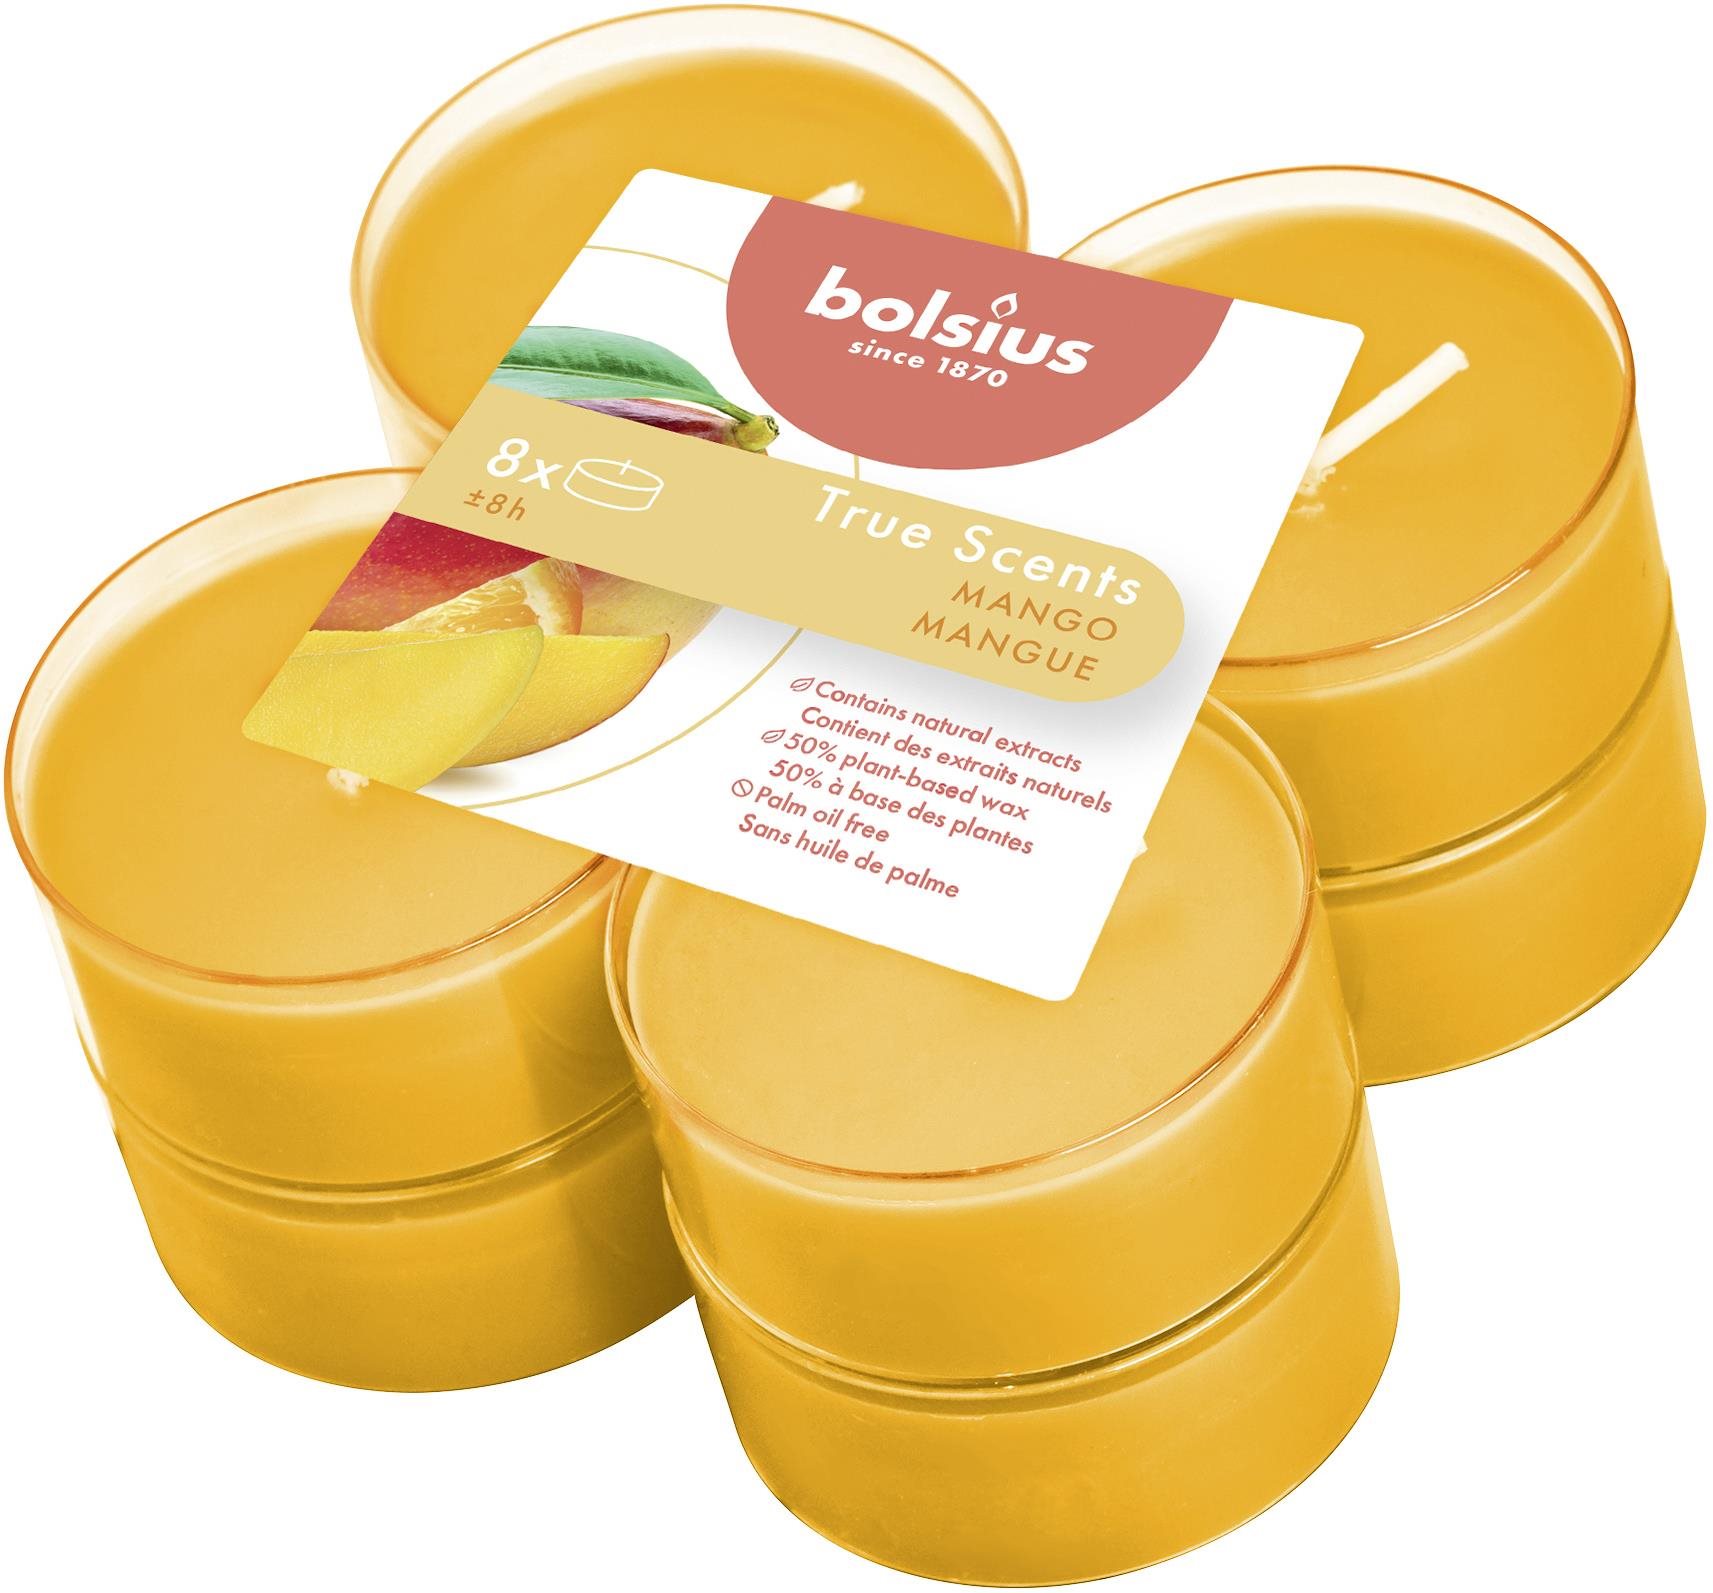 BOLSIUS Maxi True Scents Mango, 8 darab